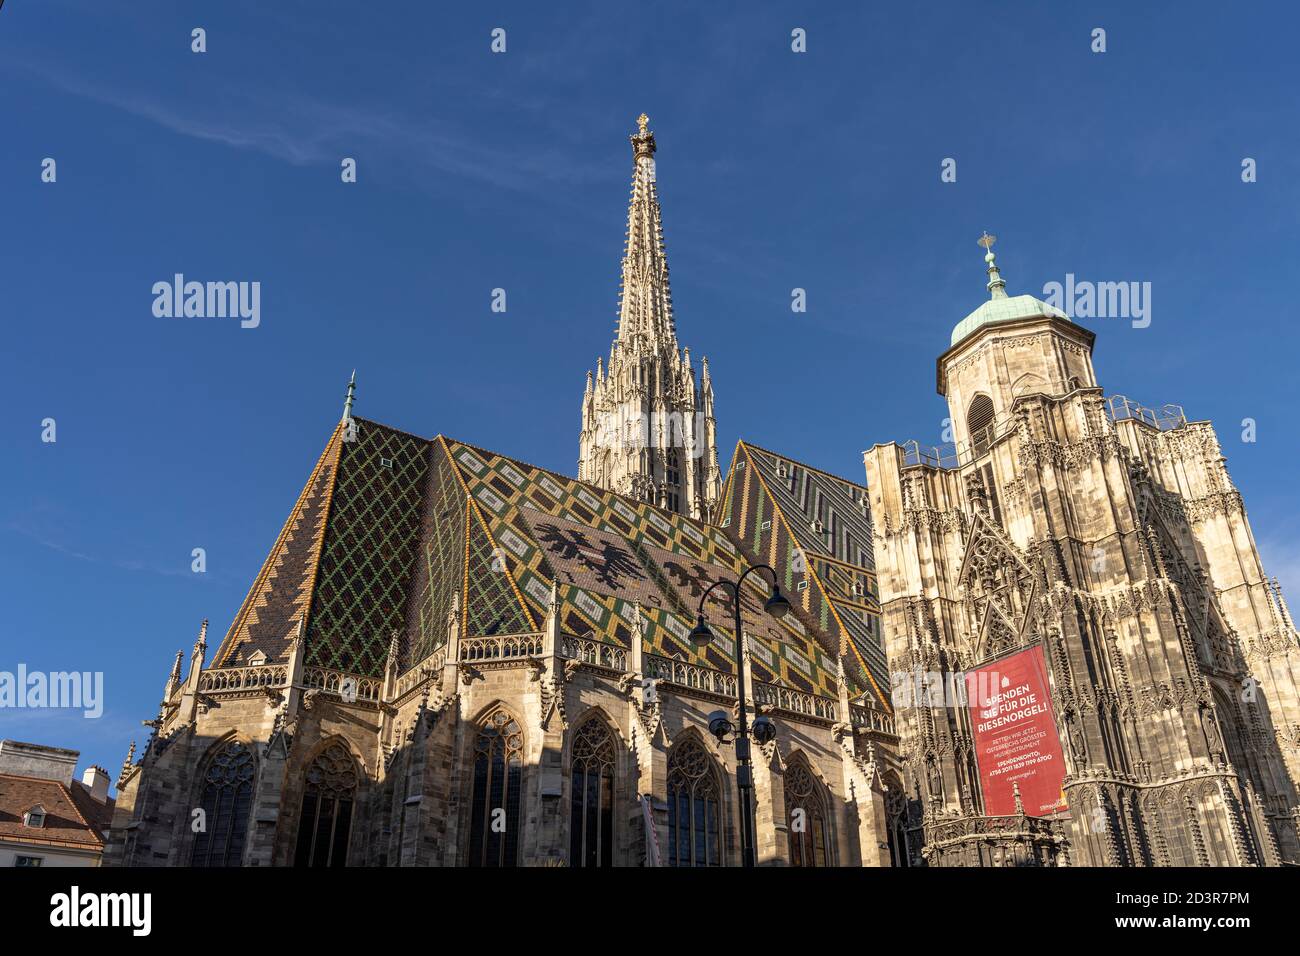 Der Stephansdom à Vienne, Österreich, Europa | Cathédrale Saint-Étienne, Vienne, Autriche, Europe Banque D'Images